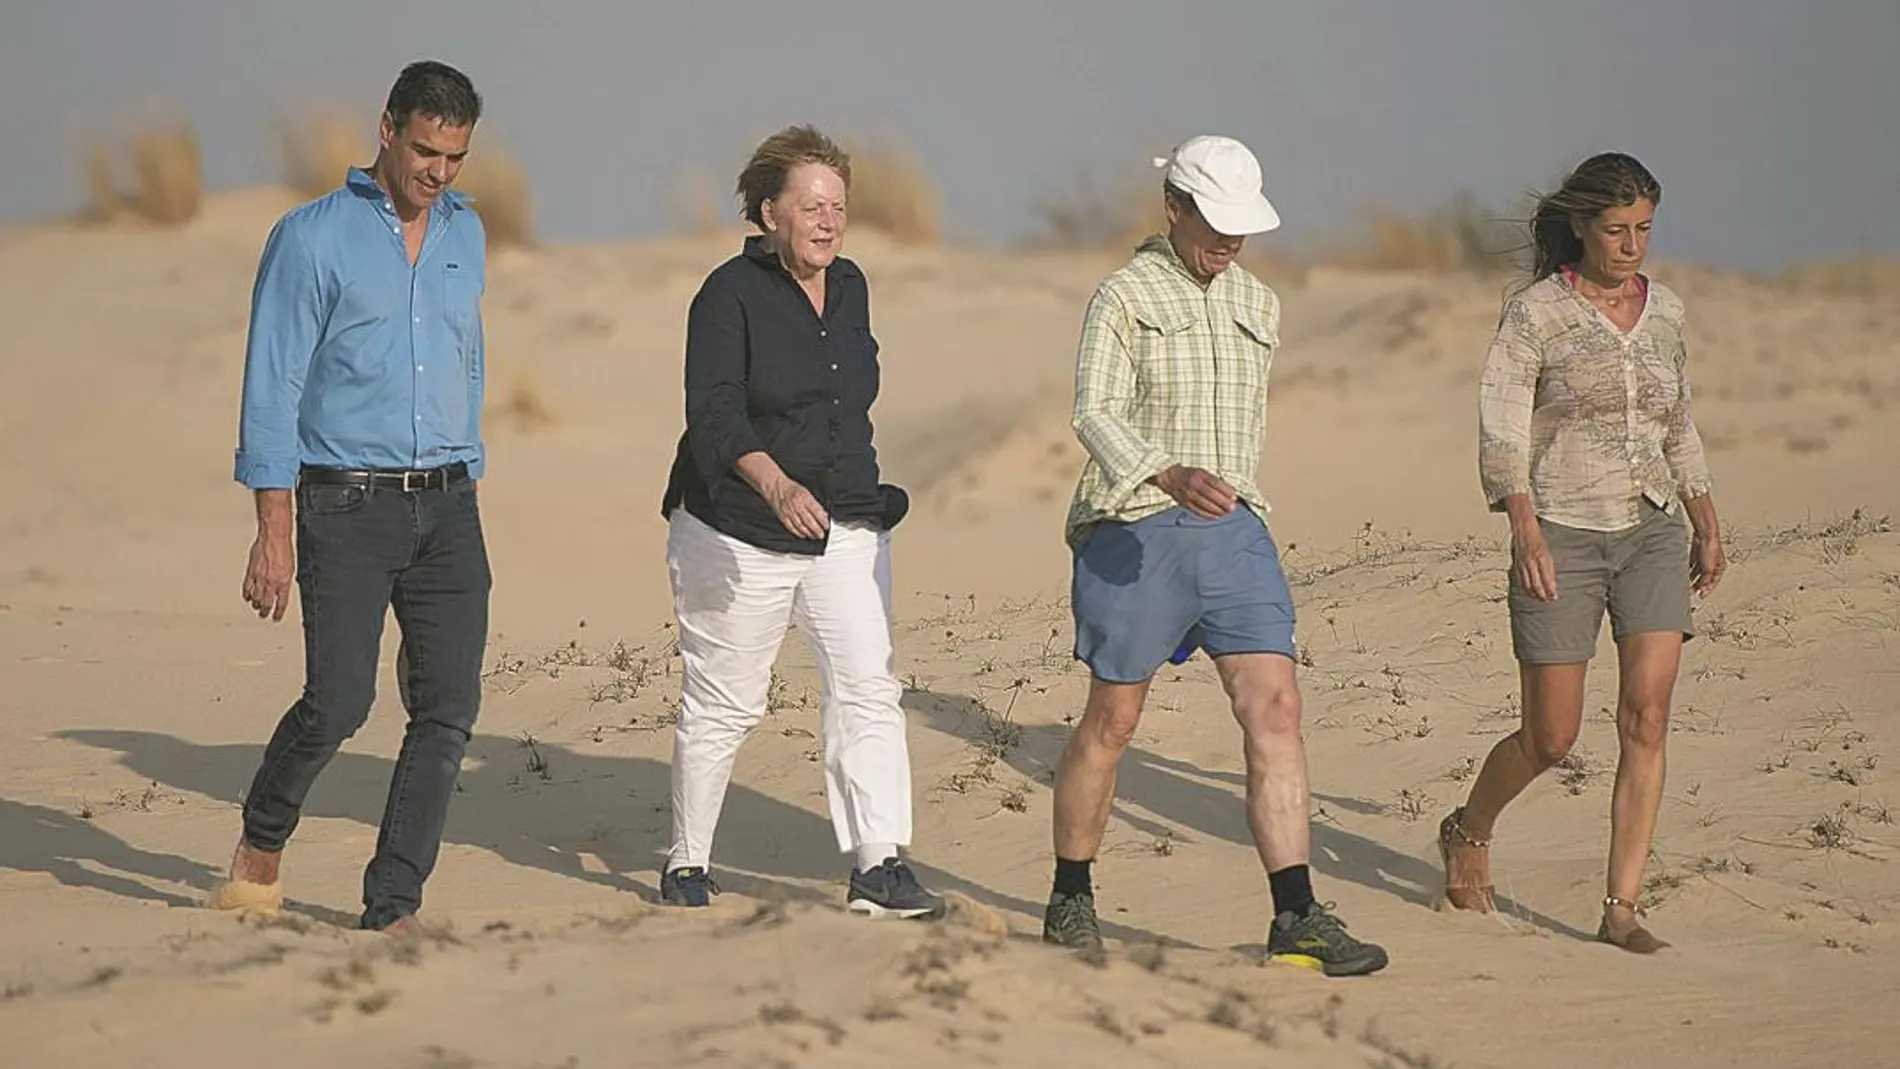 El presidente Pedro Sánchez y su mujer, Begoña Gómez, pasearon por Doñana (Huelva) junto con la canciller alemana, Angela Merkel y su marido, Joachim Sauer, durante las vacaciones de 2019